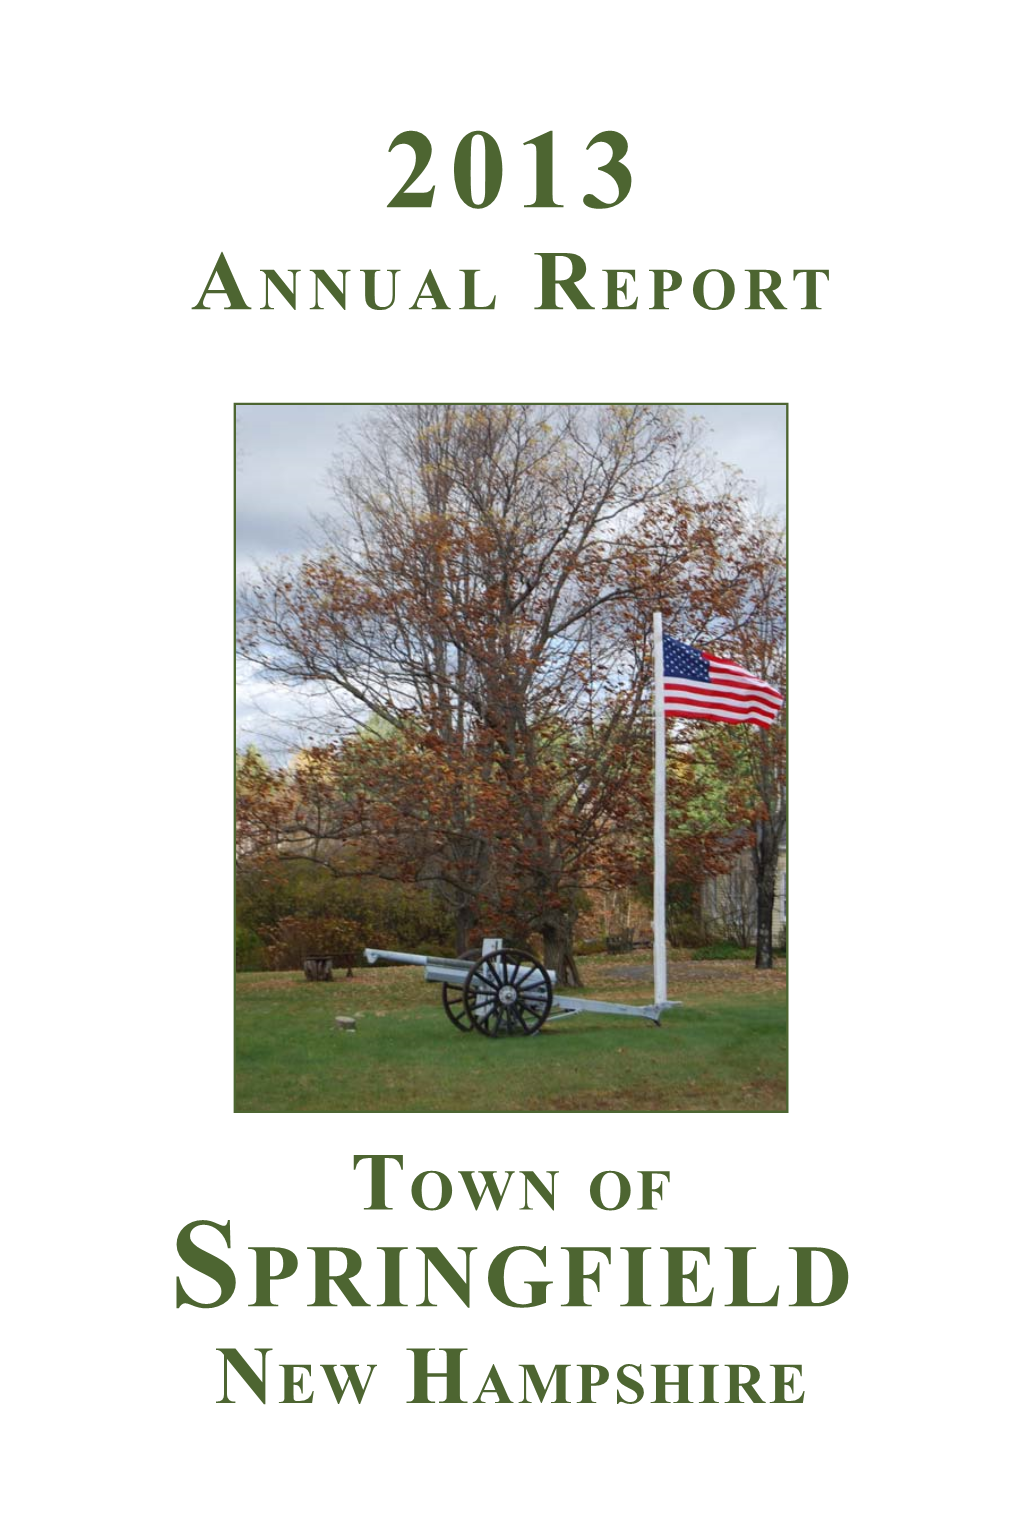 2013 Annual Report 2013 a 2013 Nnu a L R Epo R T S P R Ingfield , , N Ew H a Mp Sh I R E Town of Springfield New Hampshire